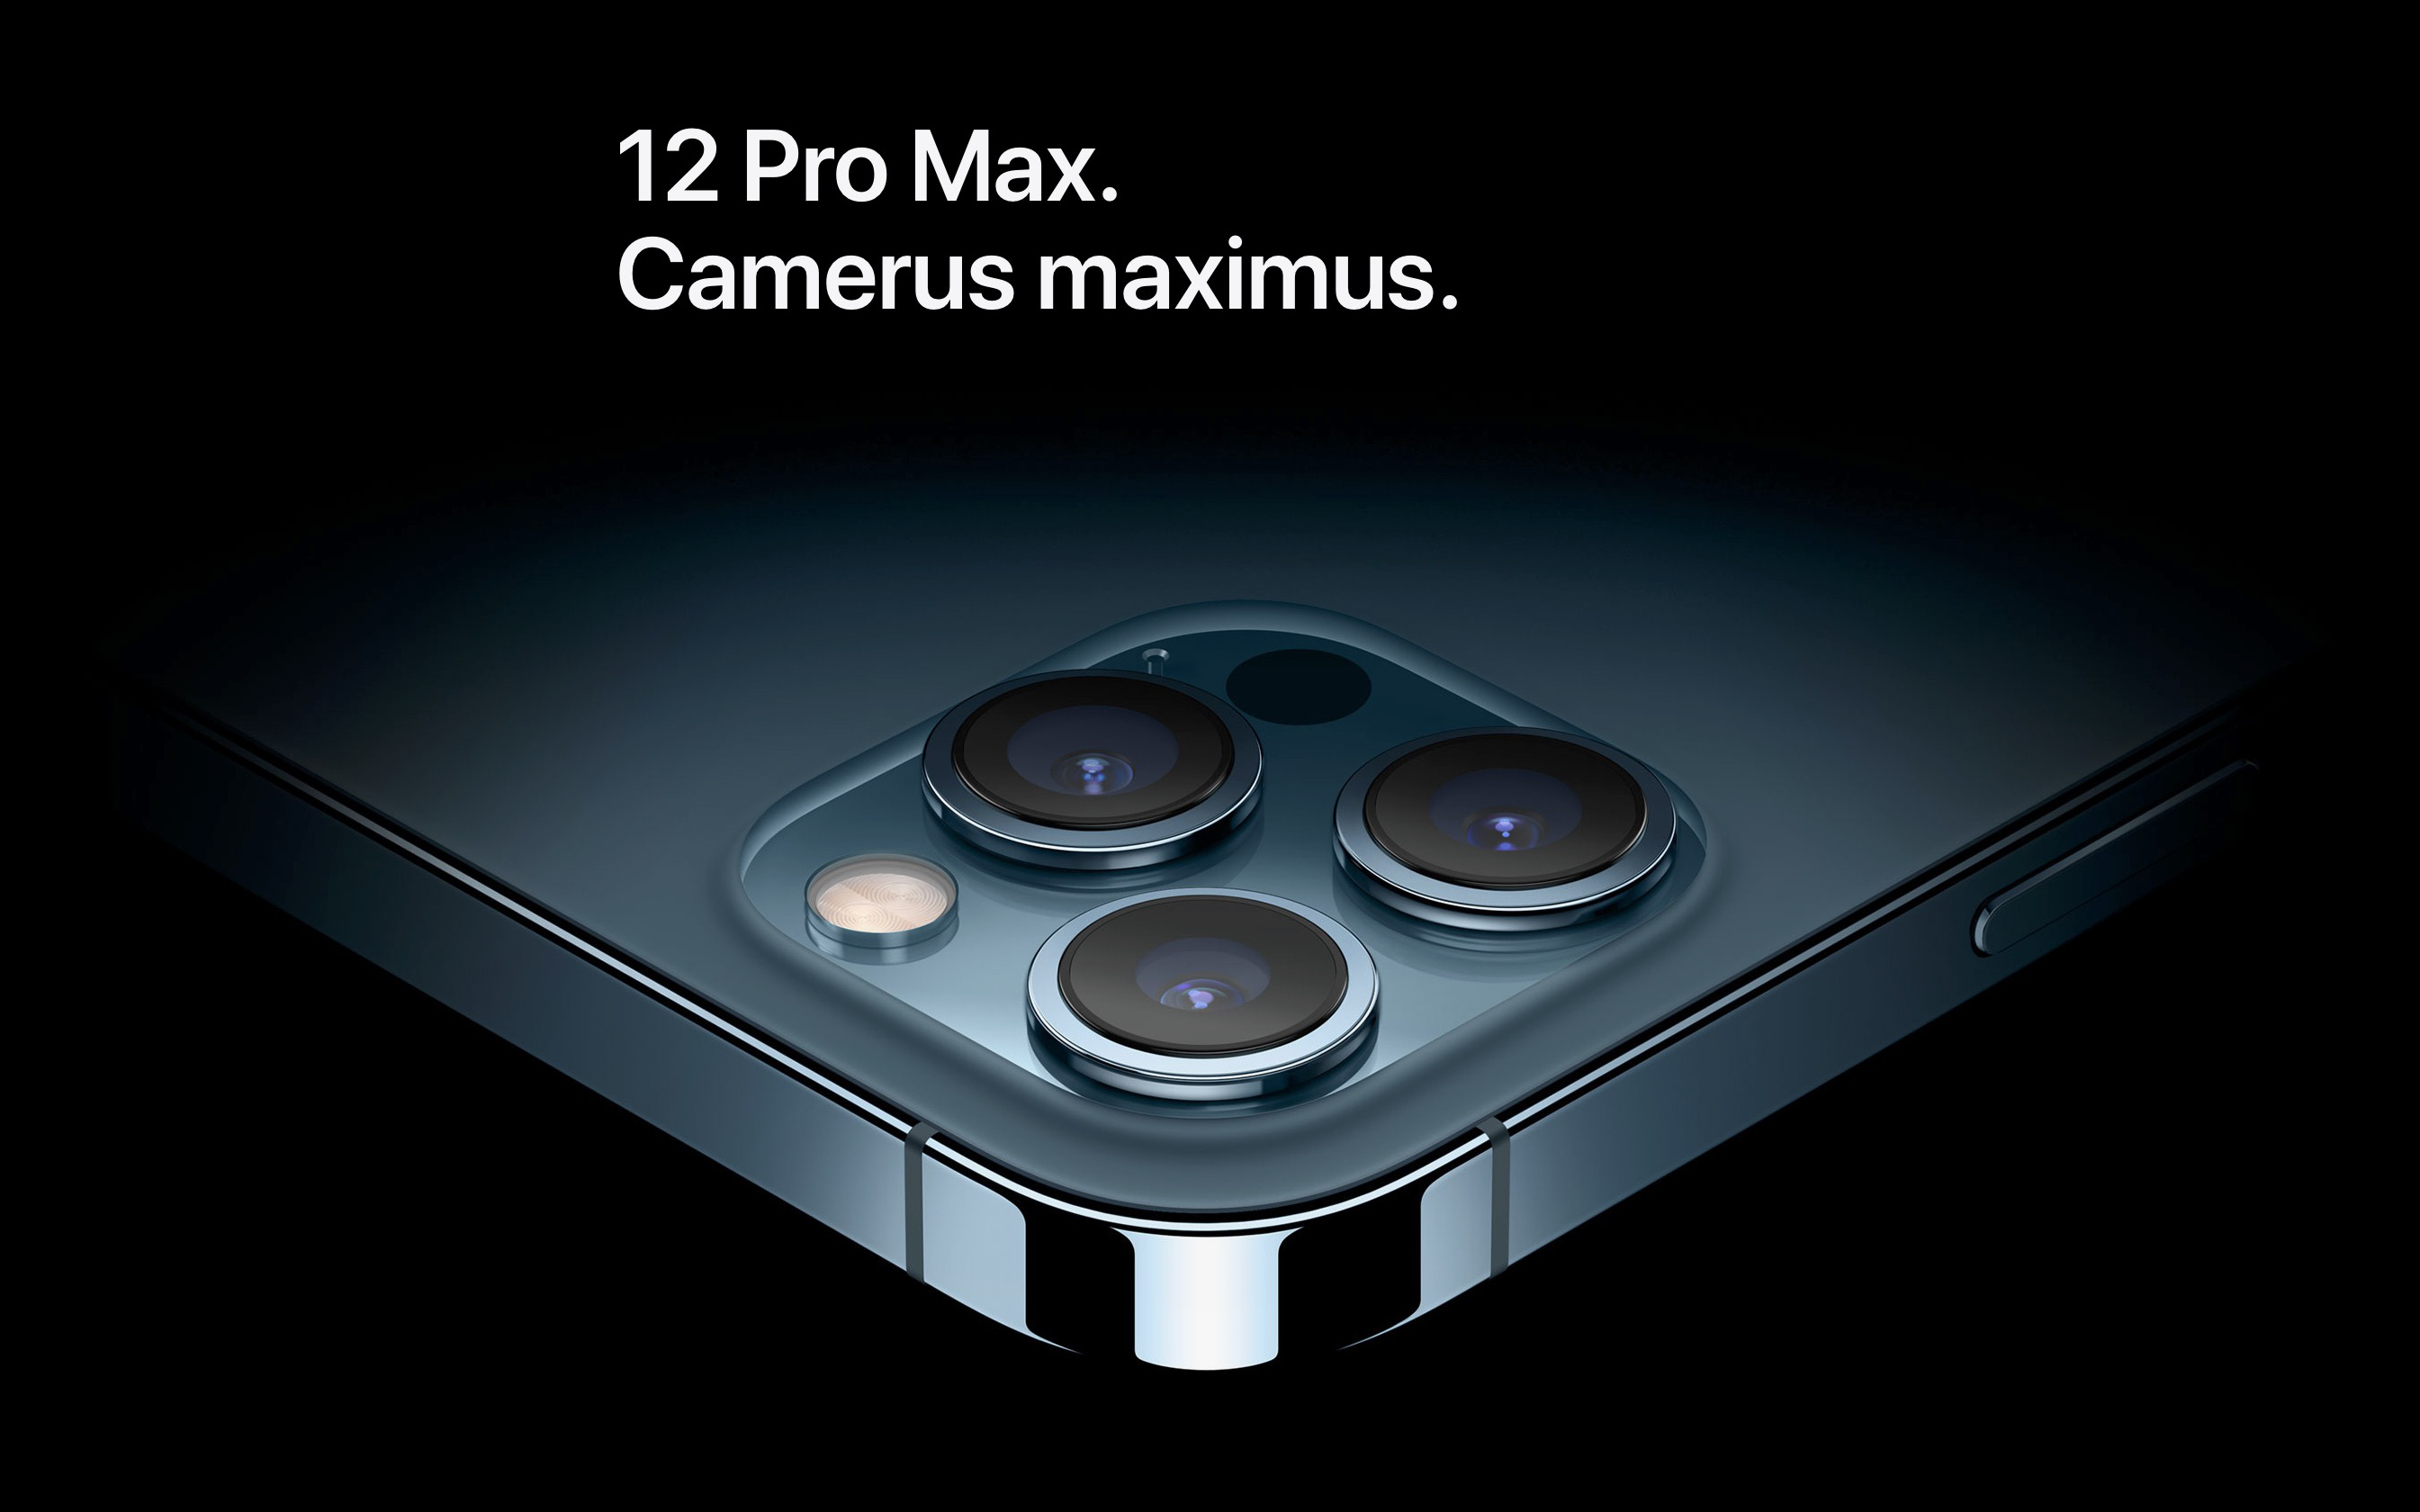 Thuật toán tối ưu ảnh chụp quá tốt, Apple vô tình làm giảm sức hấp dẫn của iPhone 12 Pro Max